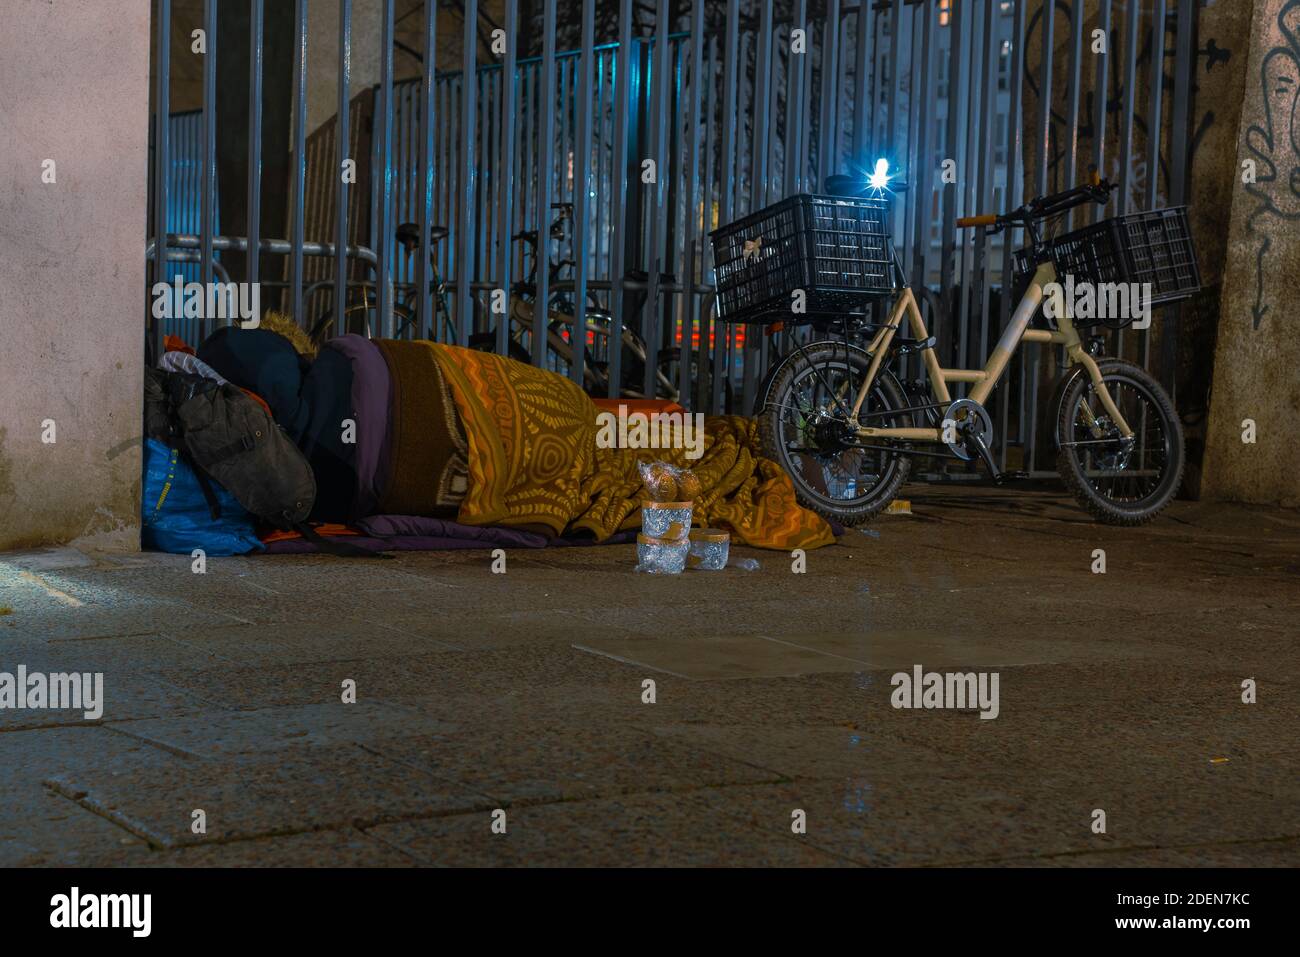 Homeless Man sleeping on sidewalk, Homeless man sleeping in winter, homeless man in sleeping bag on the street, sidewalk, Berlin unter den Linden Stock Photo